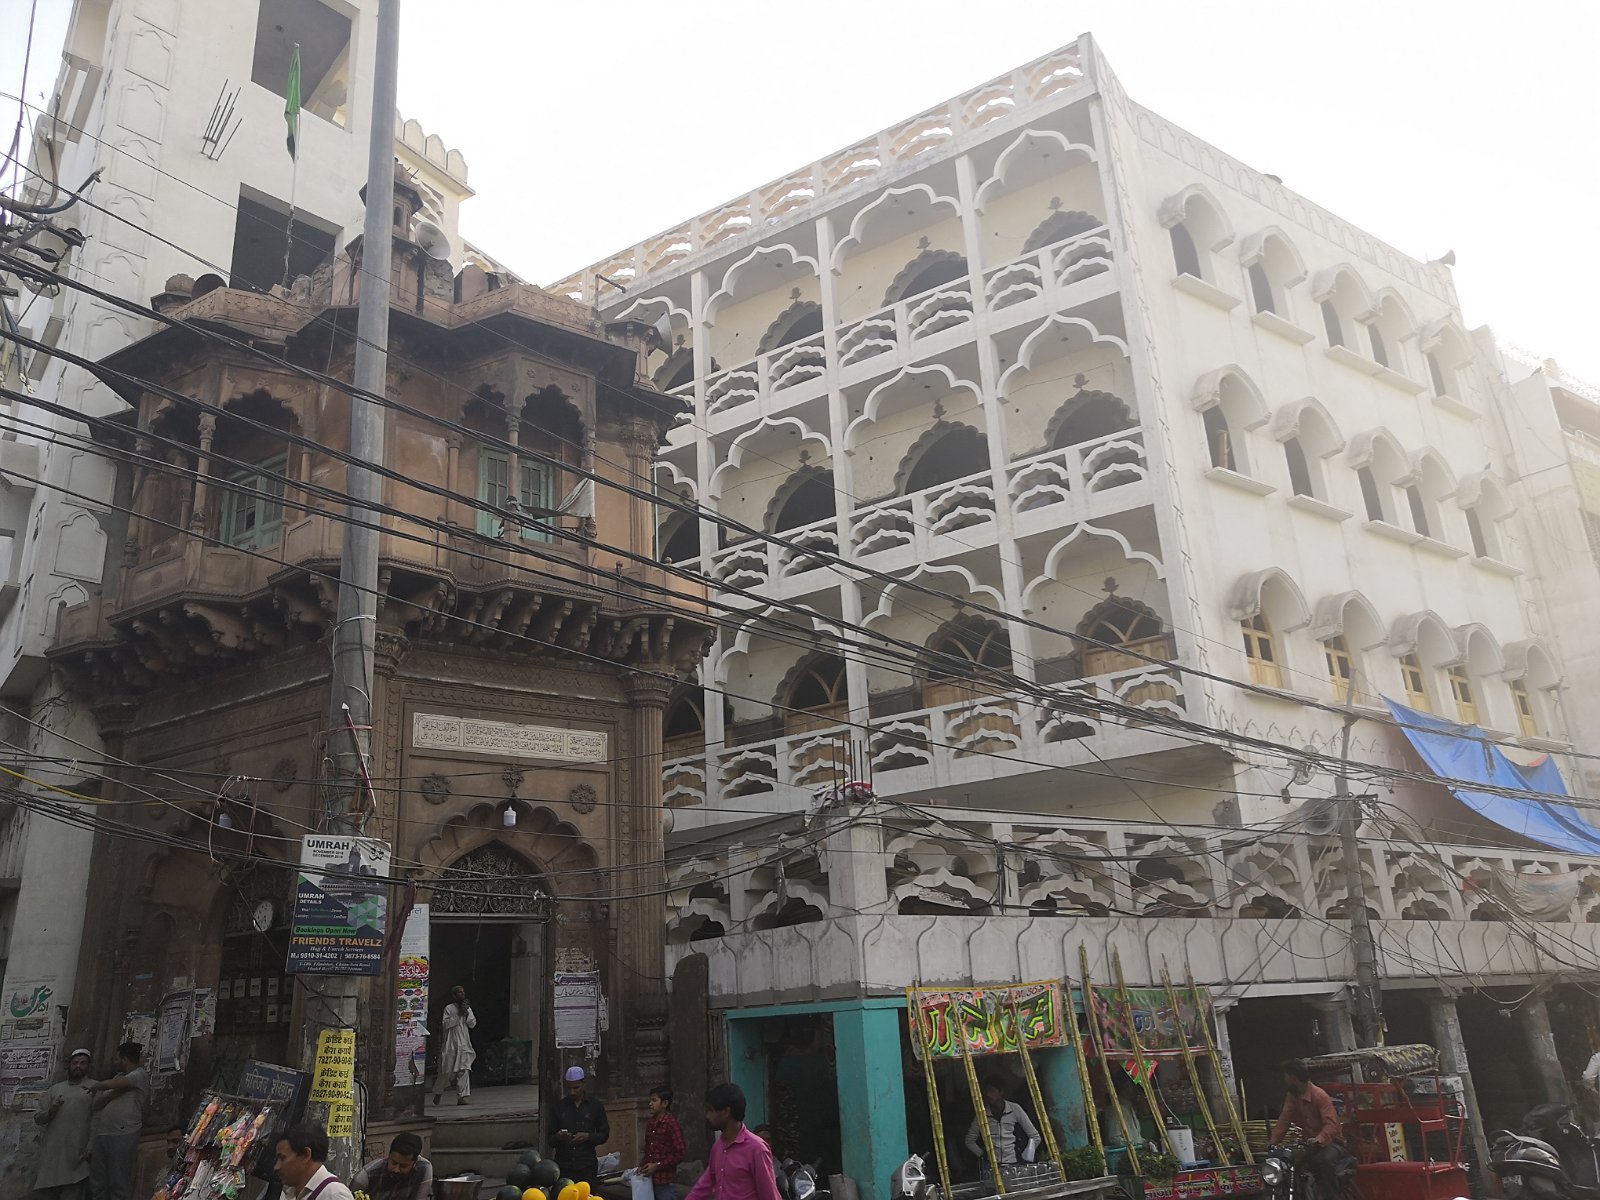 51. Zdobienia na budynku w okolicach starego bazaru w Delhi.